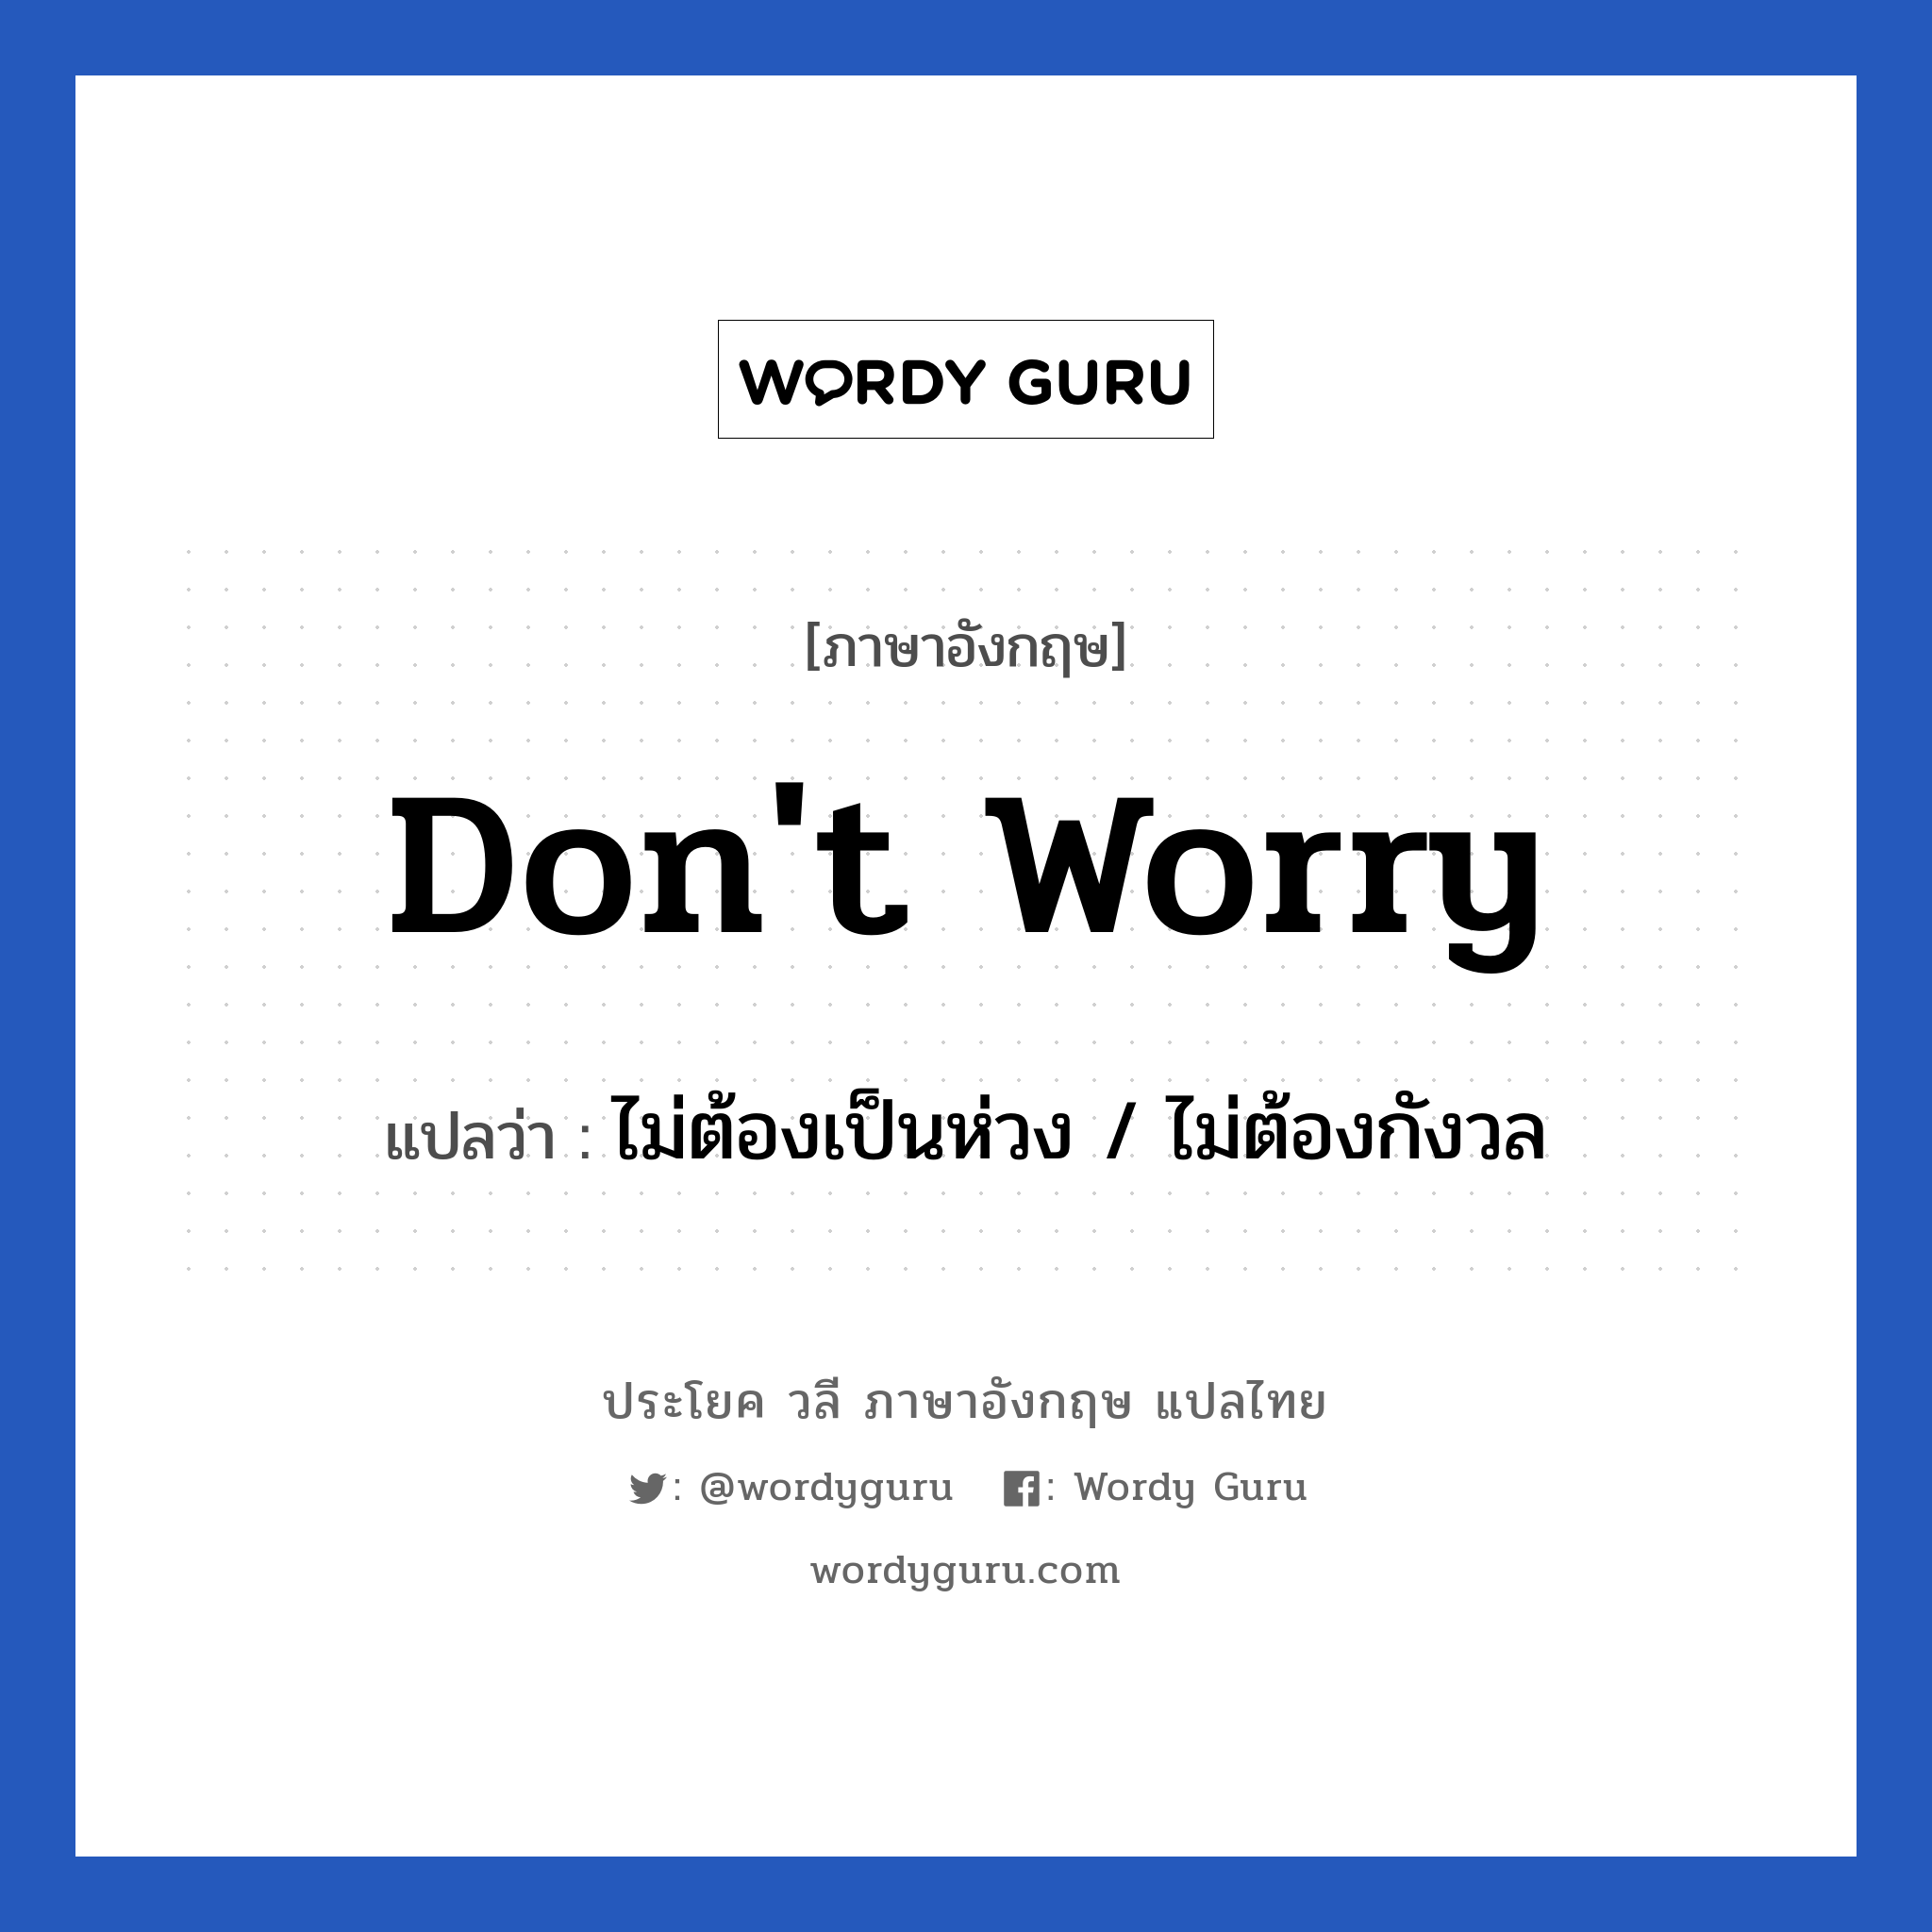 ไม่ต้องเป็นห่วง / ไม่ต้องกังวล ภาษาอังกฤษ?, วลีภาษาอังกฤษ ไม่ต้องเป็นห่วง / ไม่ต้องกังวล แปลว่า Don't worry หมวด วลีทั่วไป